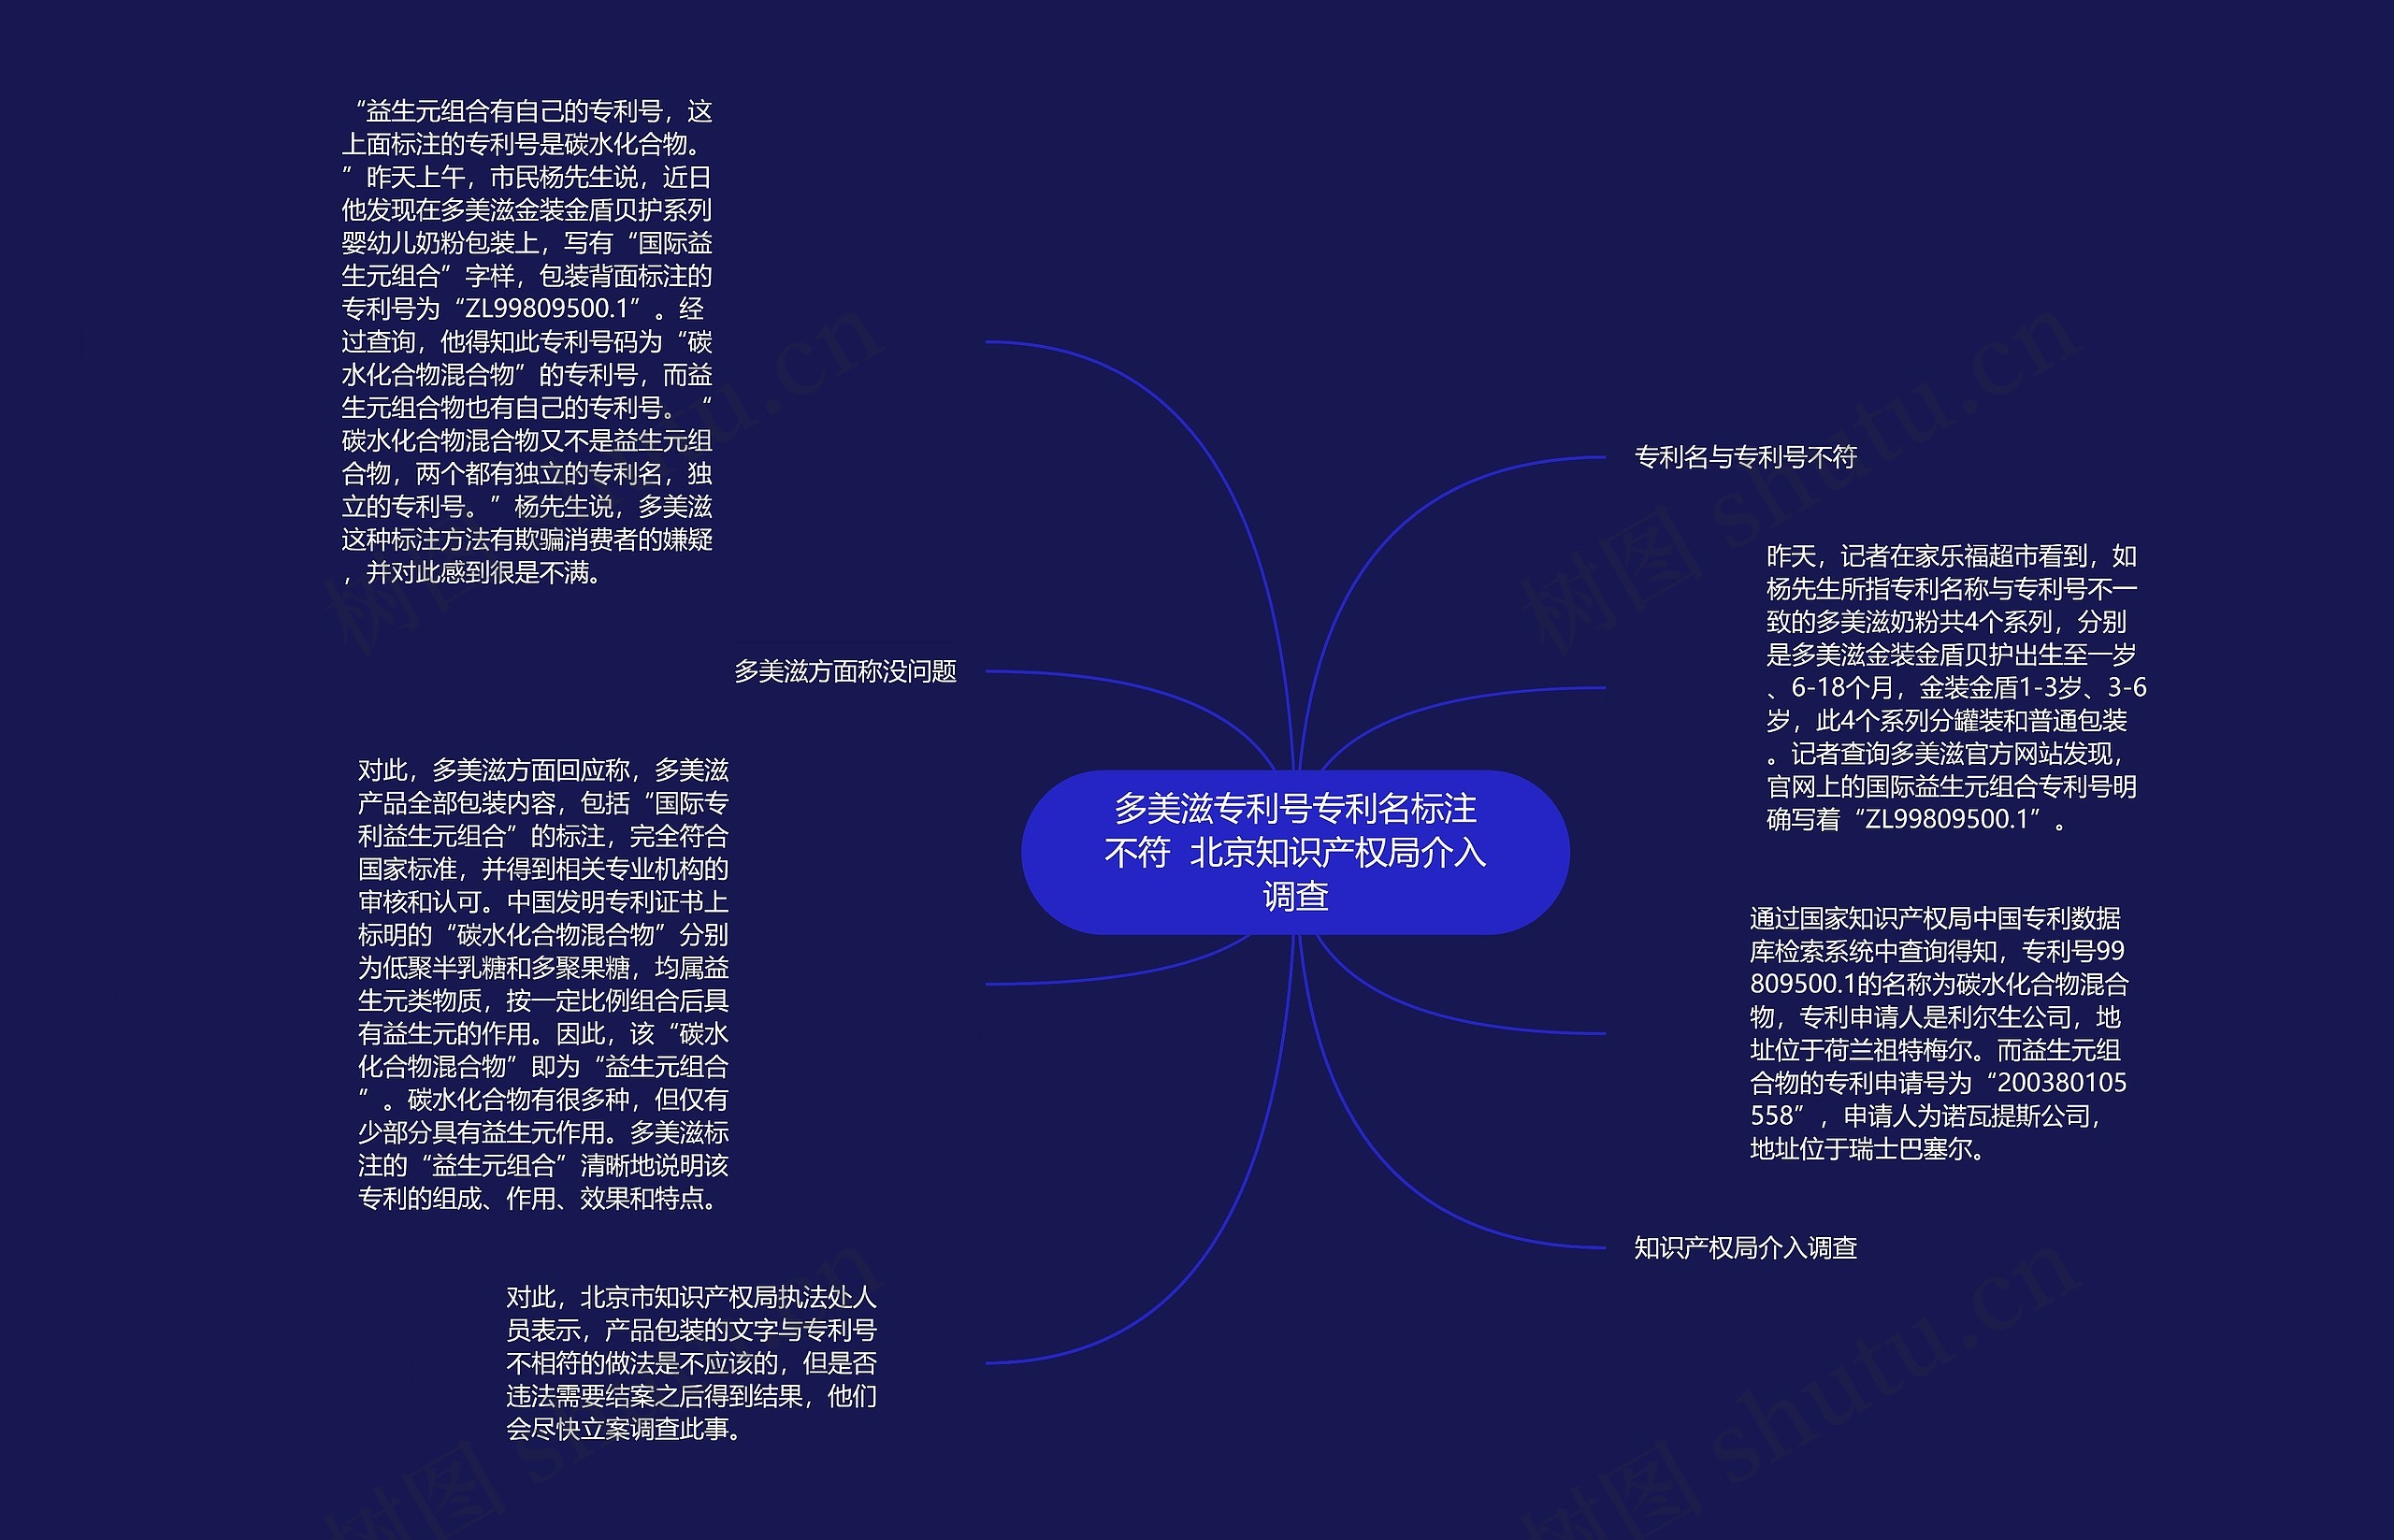 多美滋专利号专利名标注不符  北京知识产权局介入调查思维导图